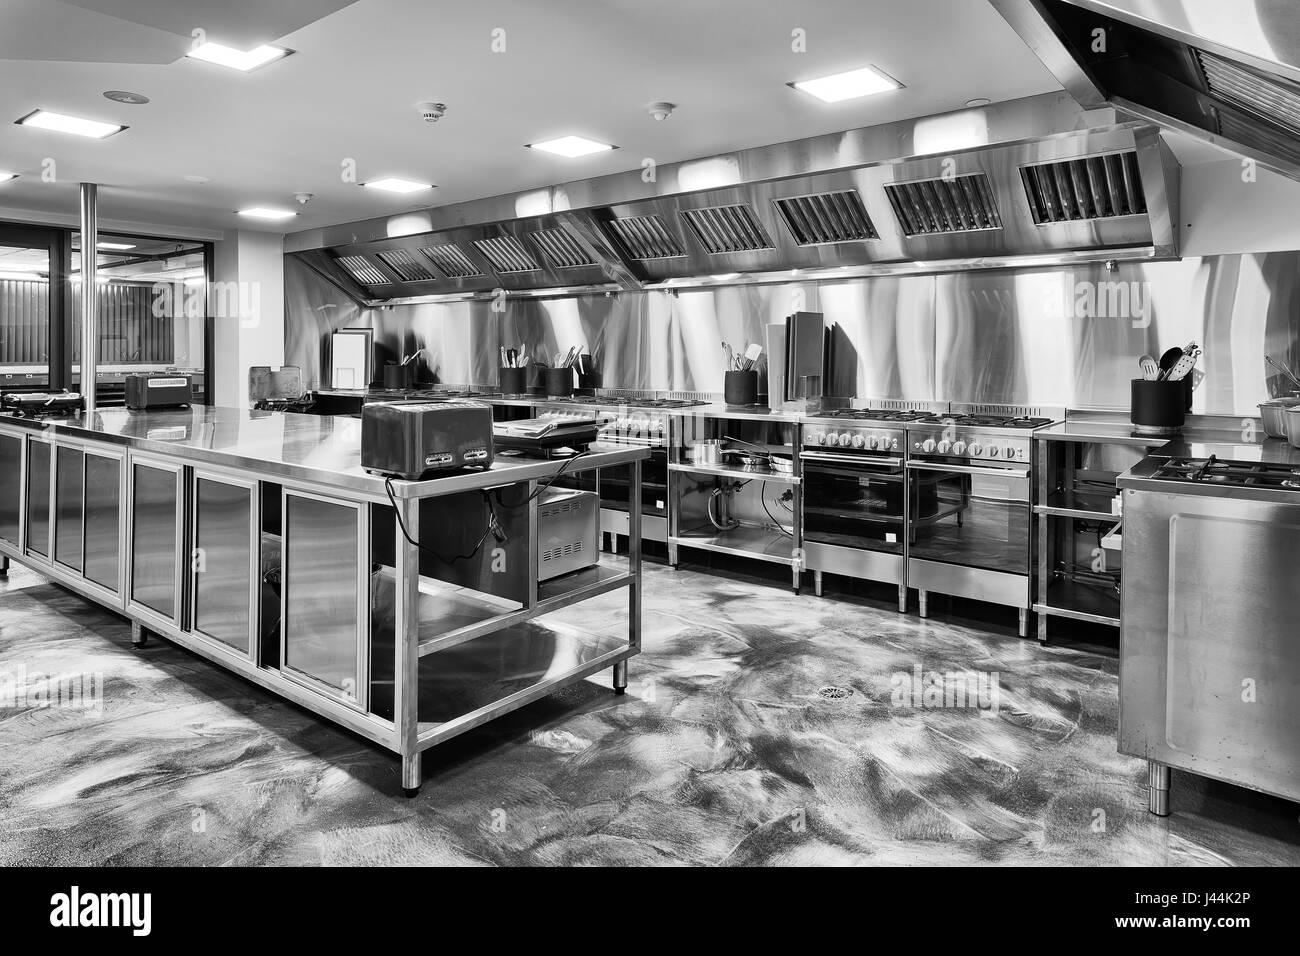 Marque nouvelle cuisine moderne entièrement équipée avec four à gaz, d'ustensiles de cuisine, plateaux de table et appliences en noir-blanc. Banque D'Images